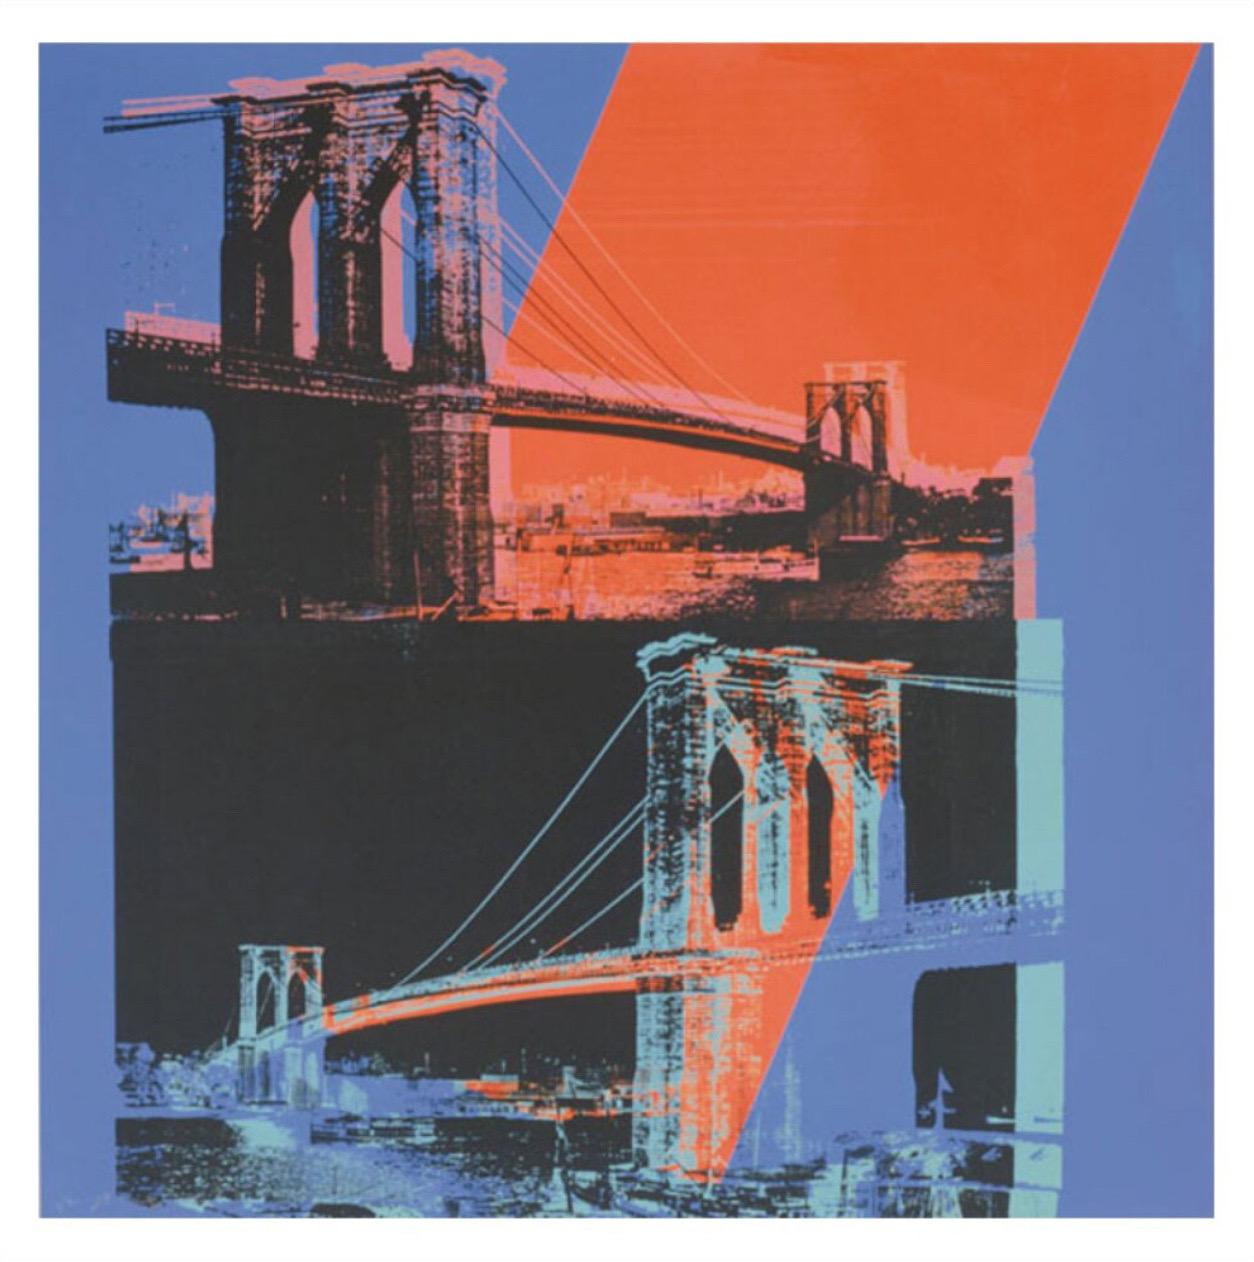 Andy Warhol, Brooklyn Bridge, 1983 (pink, rouge, bleu)

Papier numérique de conservation mat de 250 g/m².

Taille de l'image 90 × 90 cm (35.43 x 35.43 in) 

Format du papier 97 × 97 cm (38.19 x 38.19 in) 

Ce tirage est accompagné d'une bordure